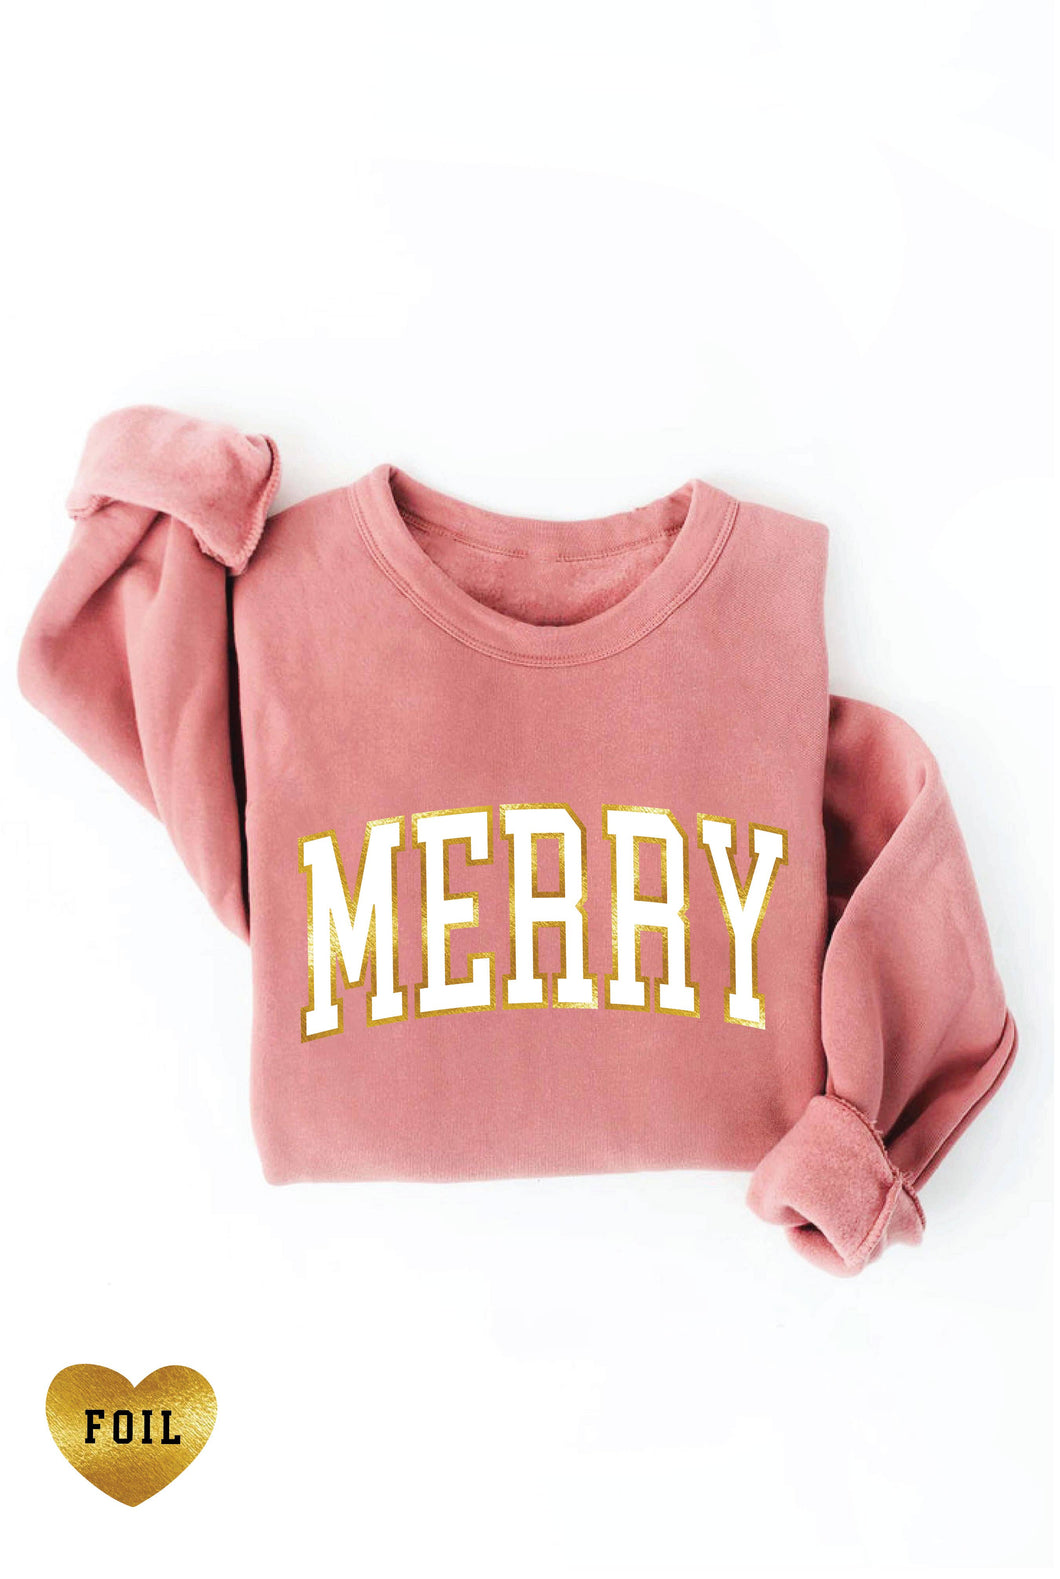 MERRY FOIL Graphic Sweatshirt: M / MAUVE